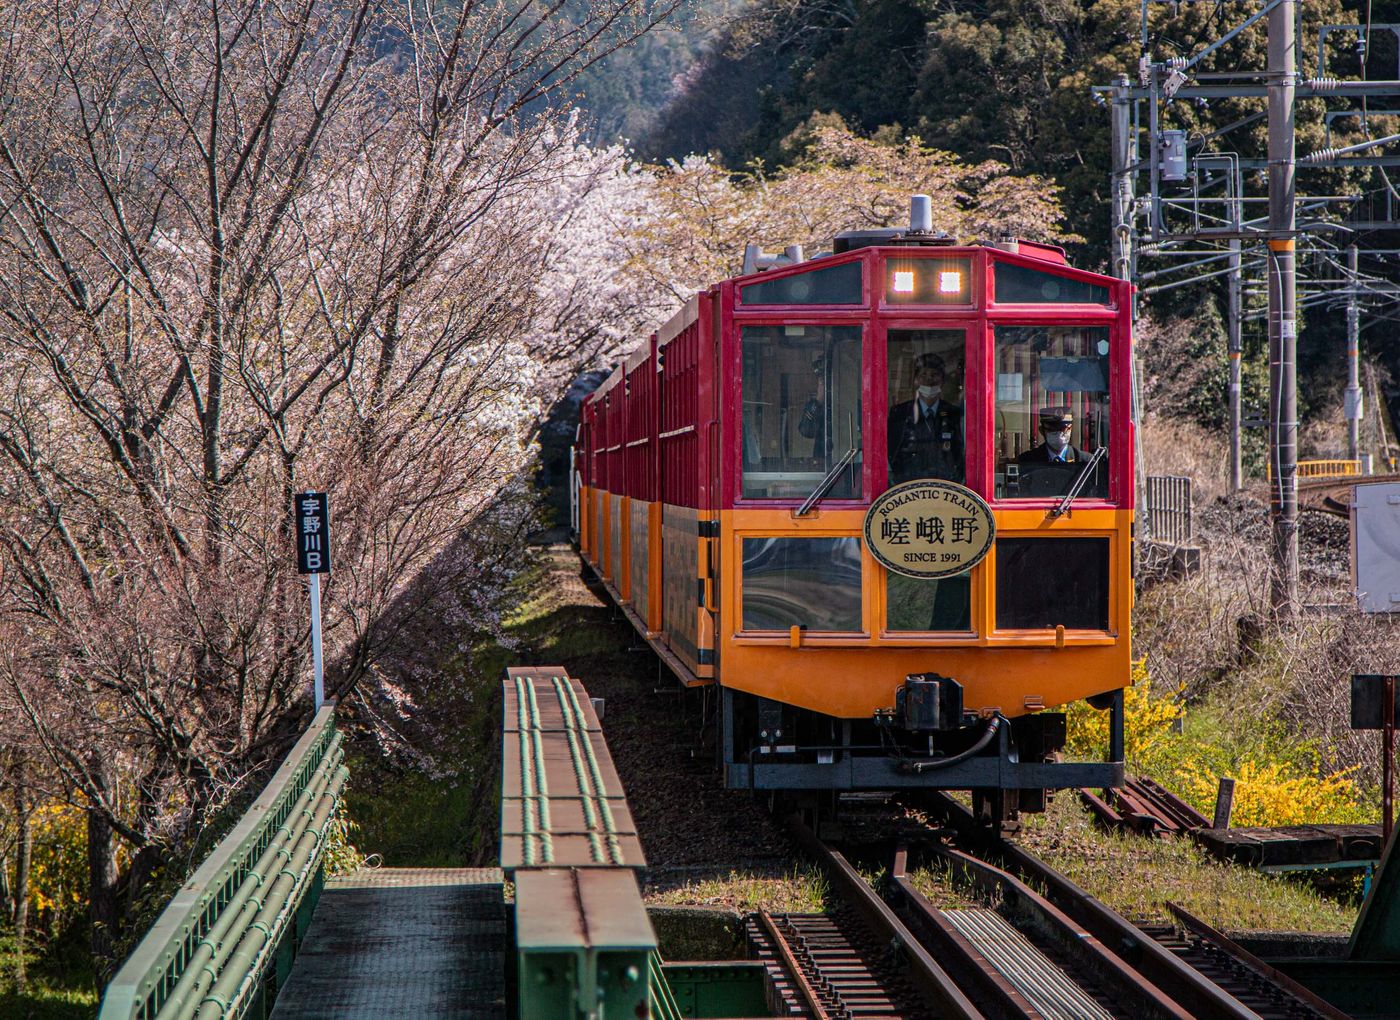 嵐山小火車 2020.4.7 攝影